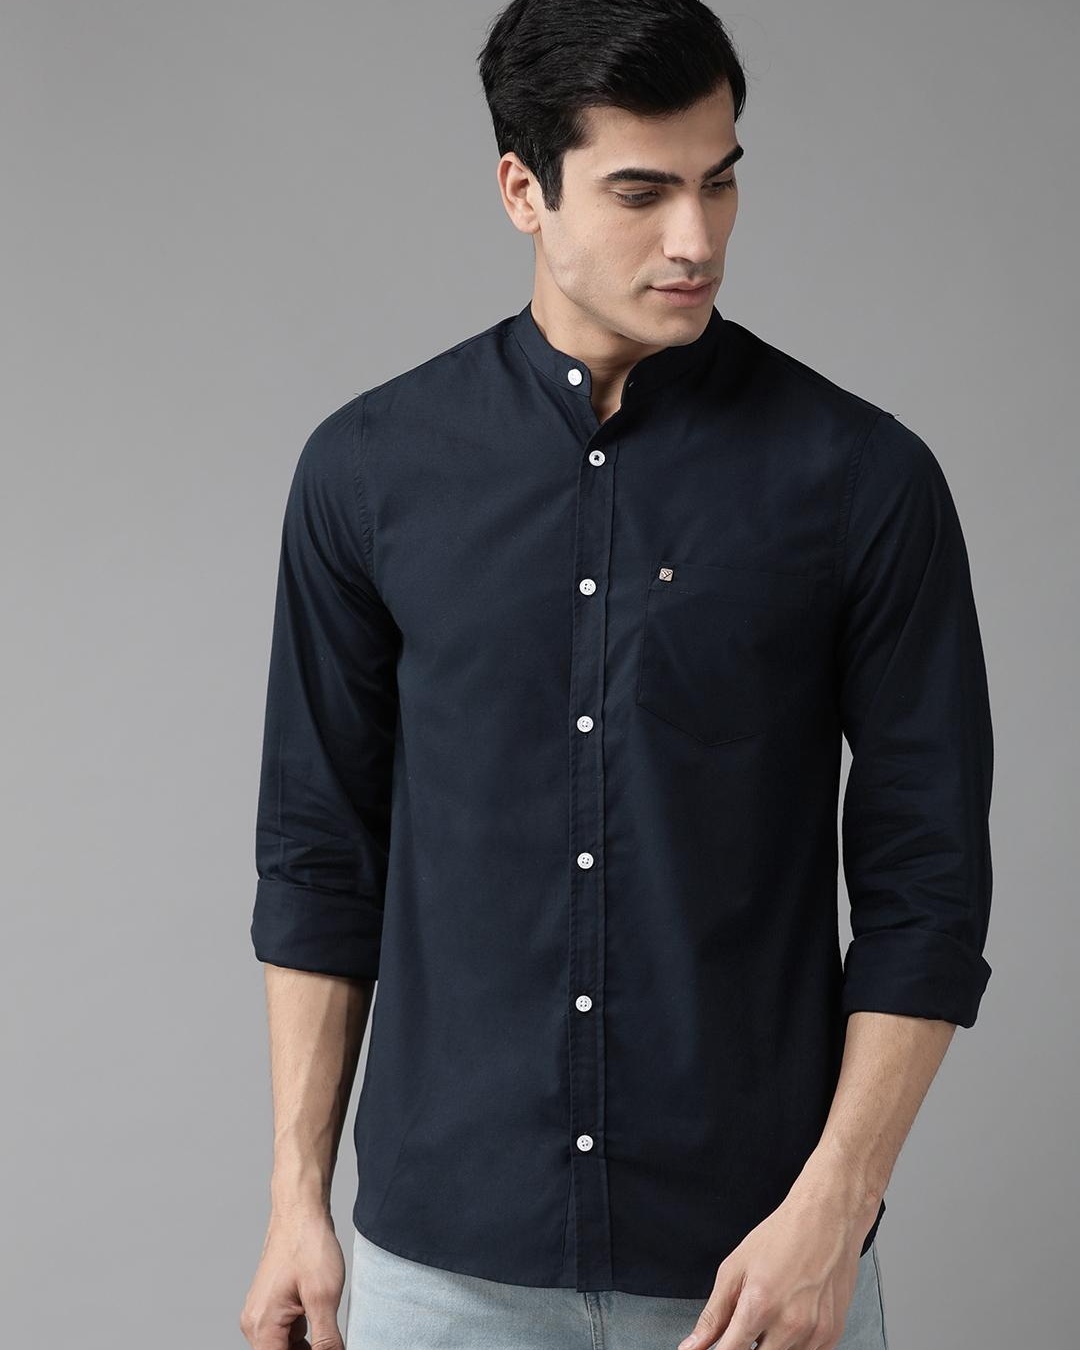 Buy Men's Blue Casual Shirt Online at Bewakoof